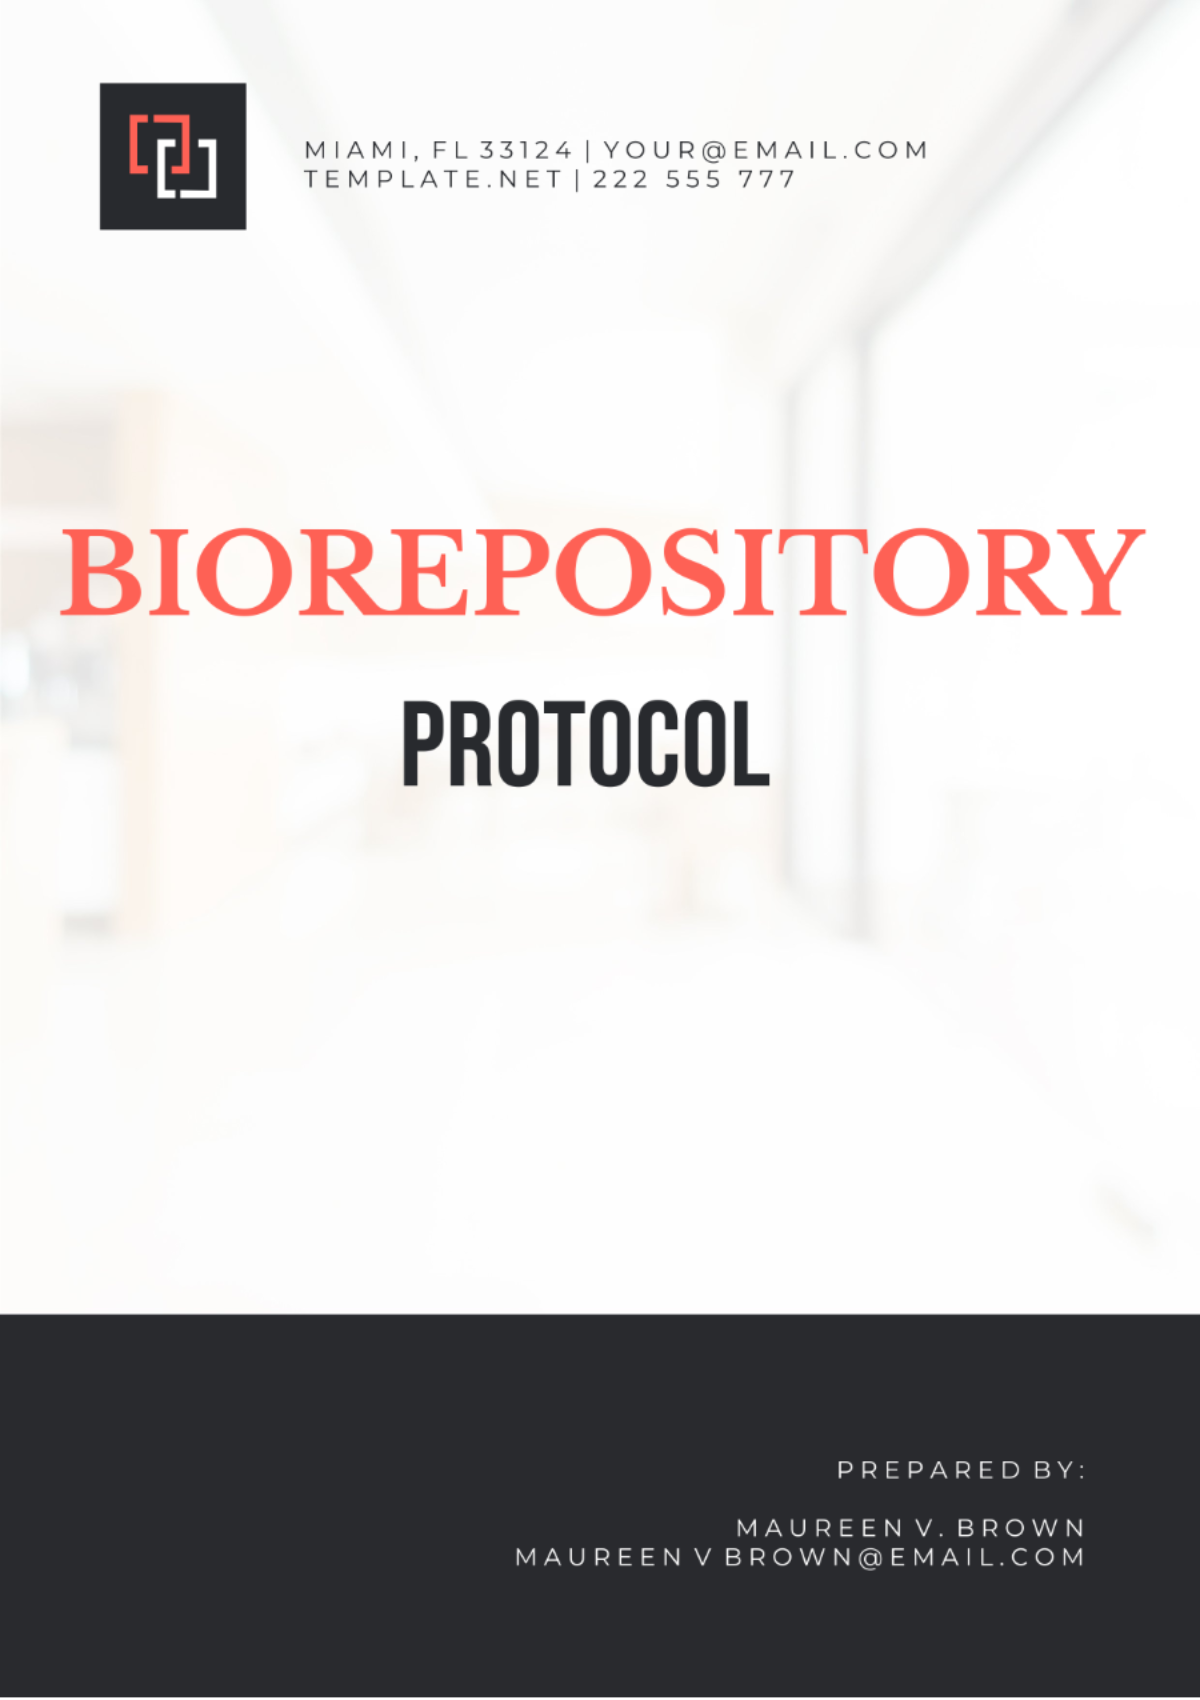 Free Biorepository Protocol Template